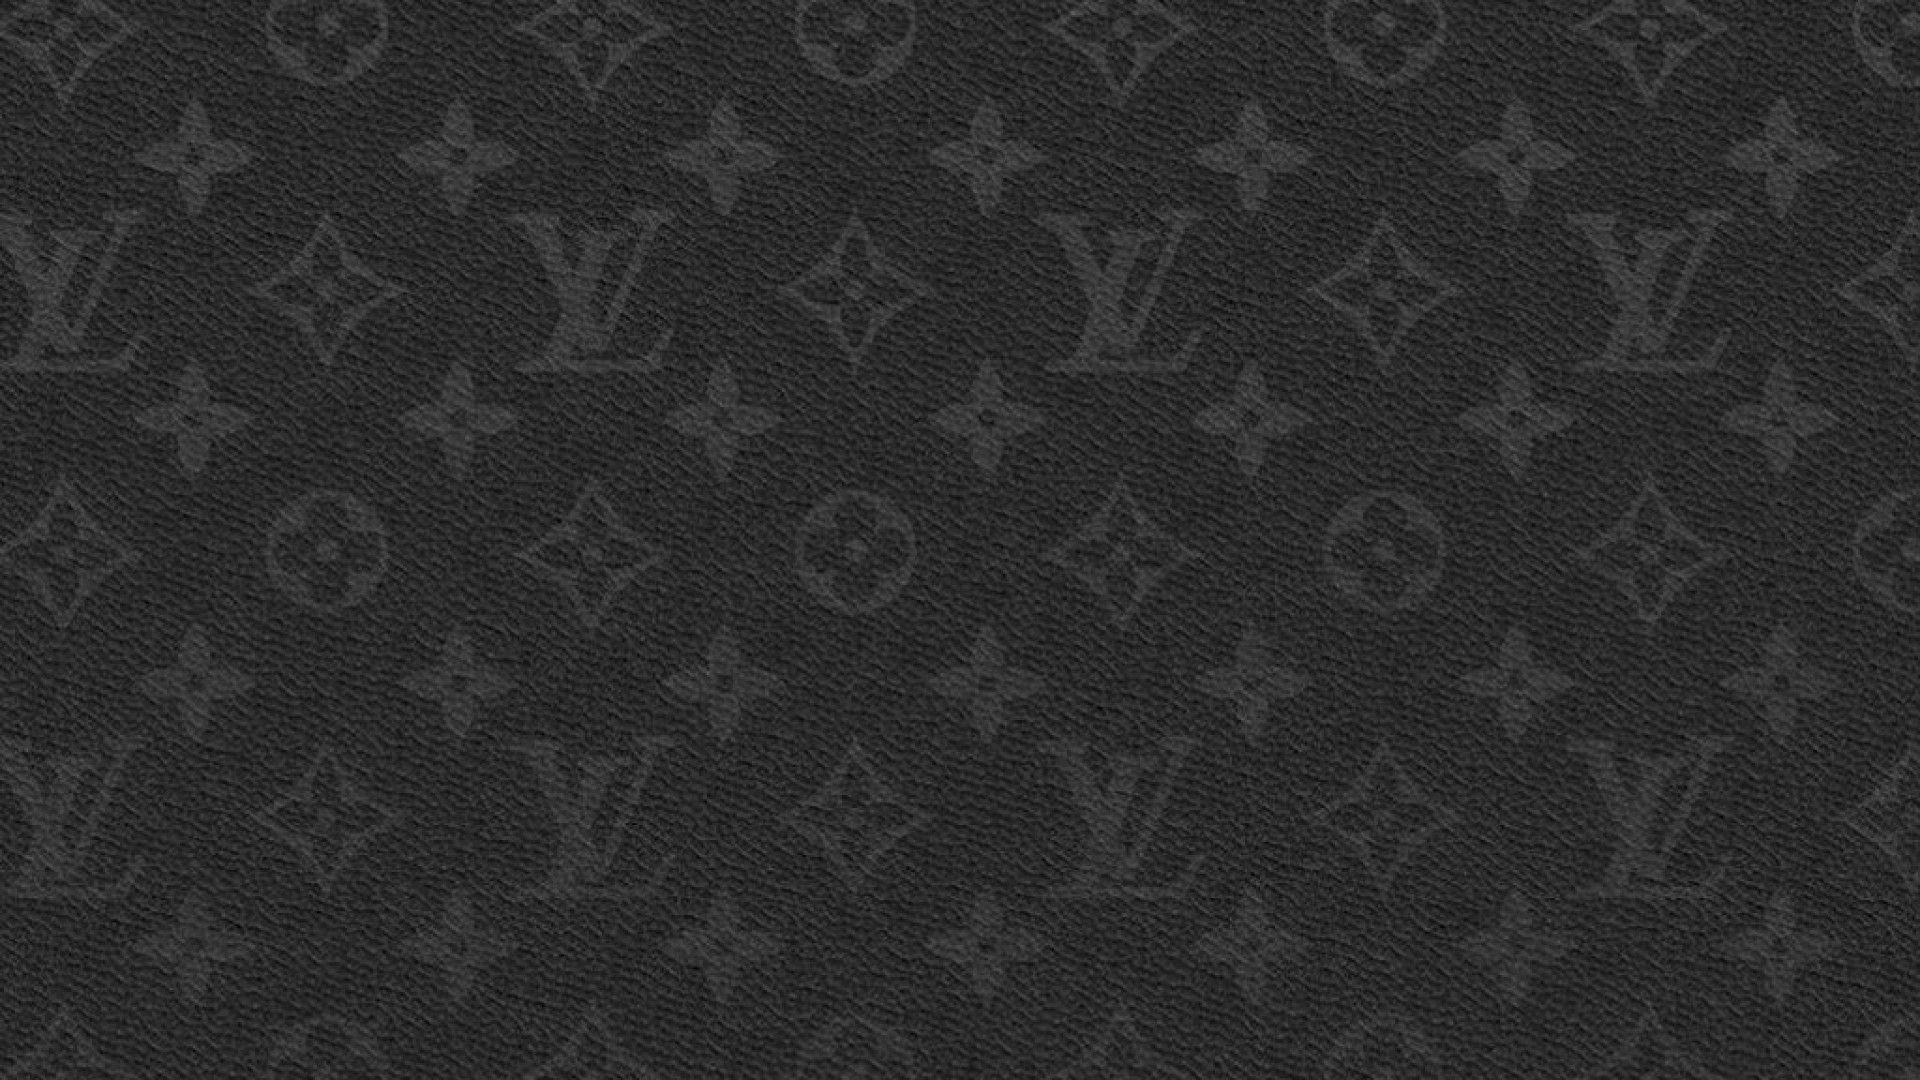 Louis Vuitton BW Mac Wallpaper Download